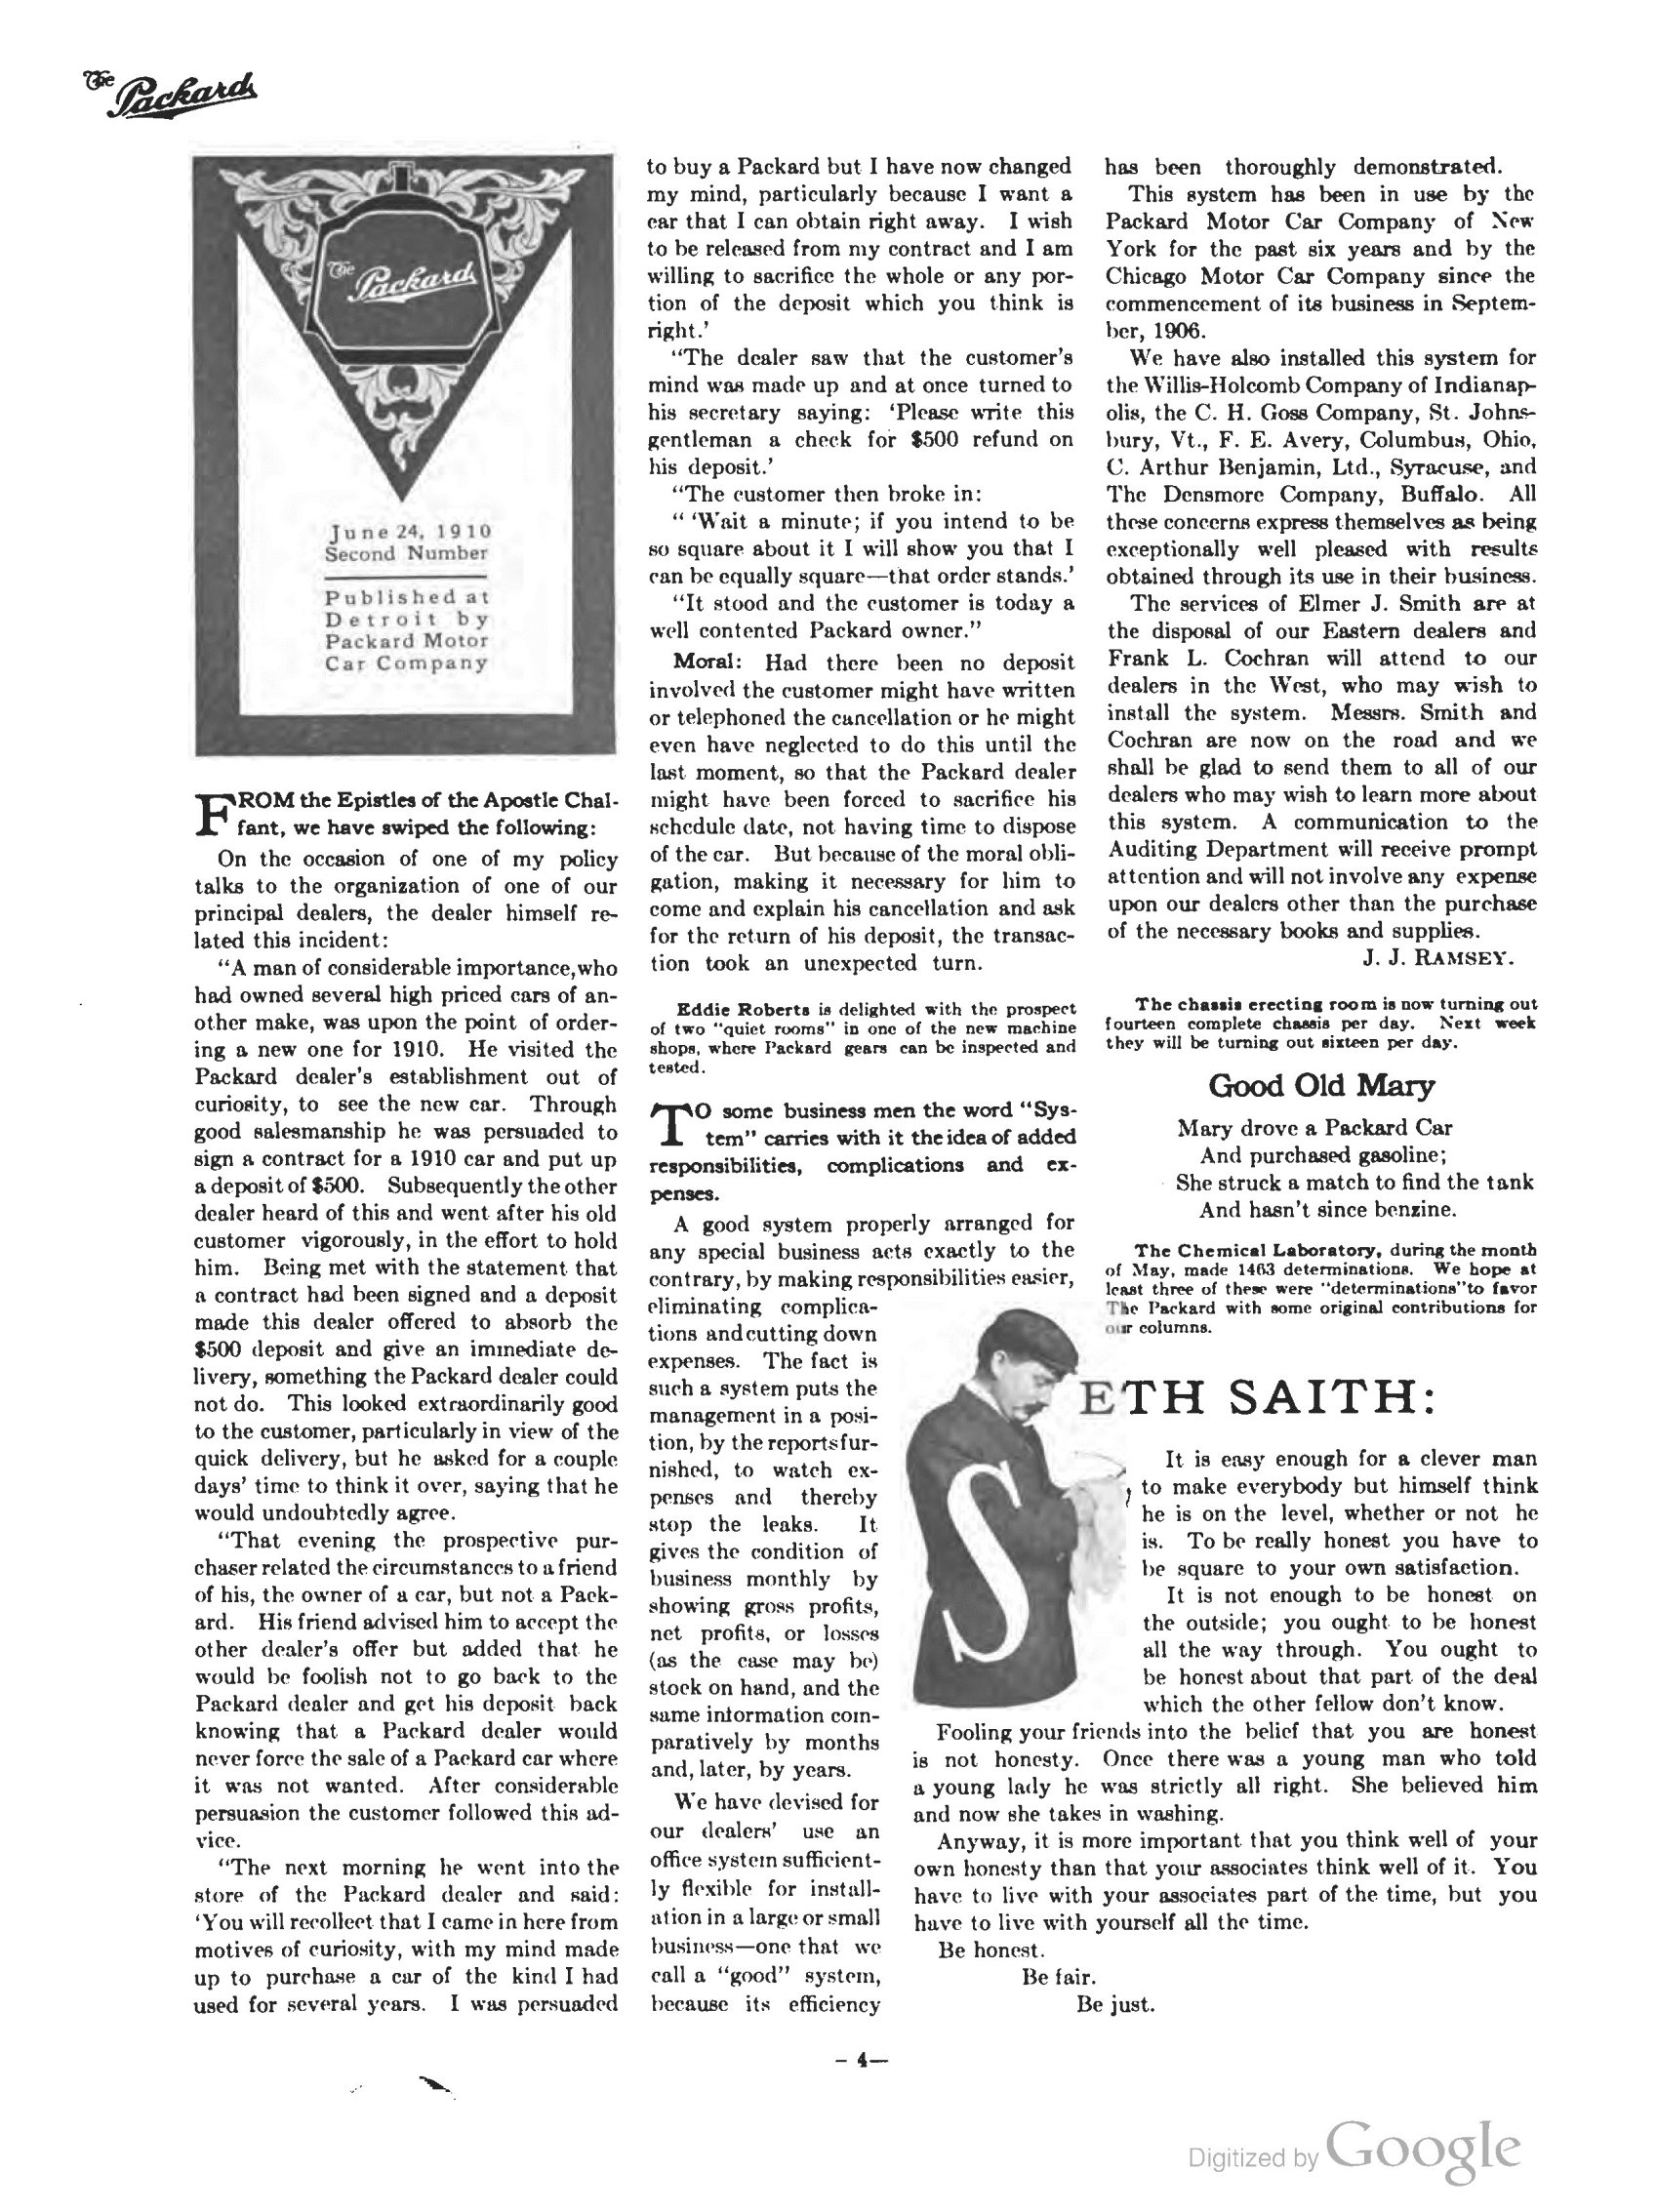 1910_The_Packard_Newsletter-022